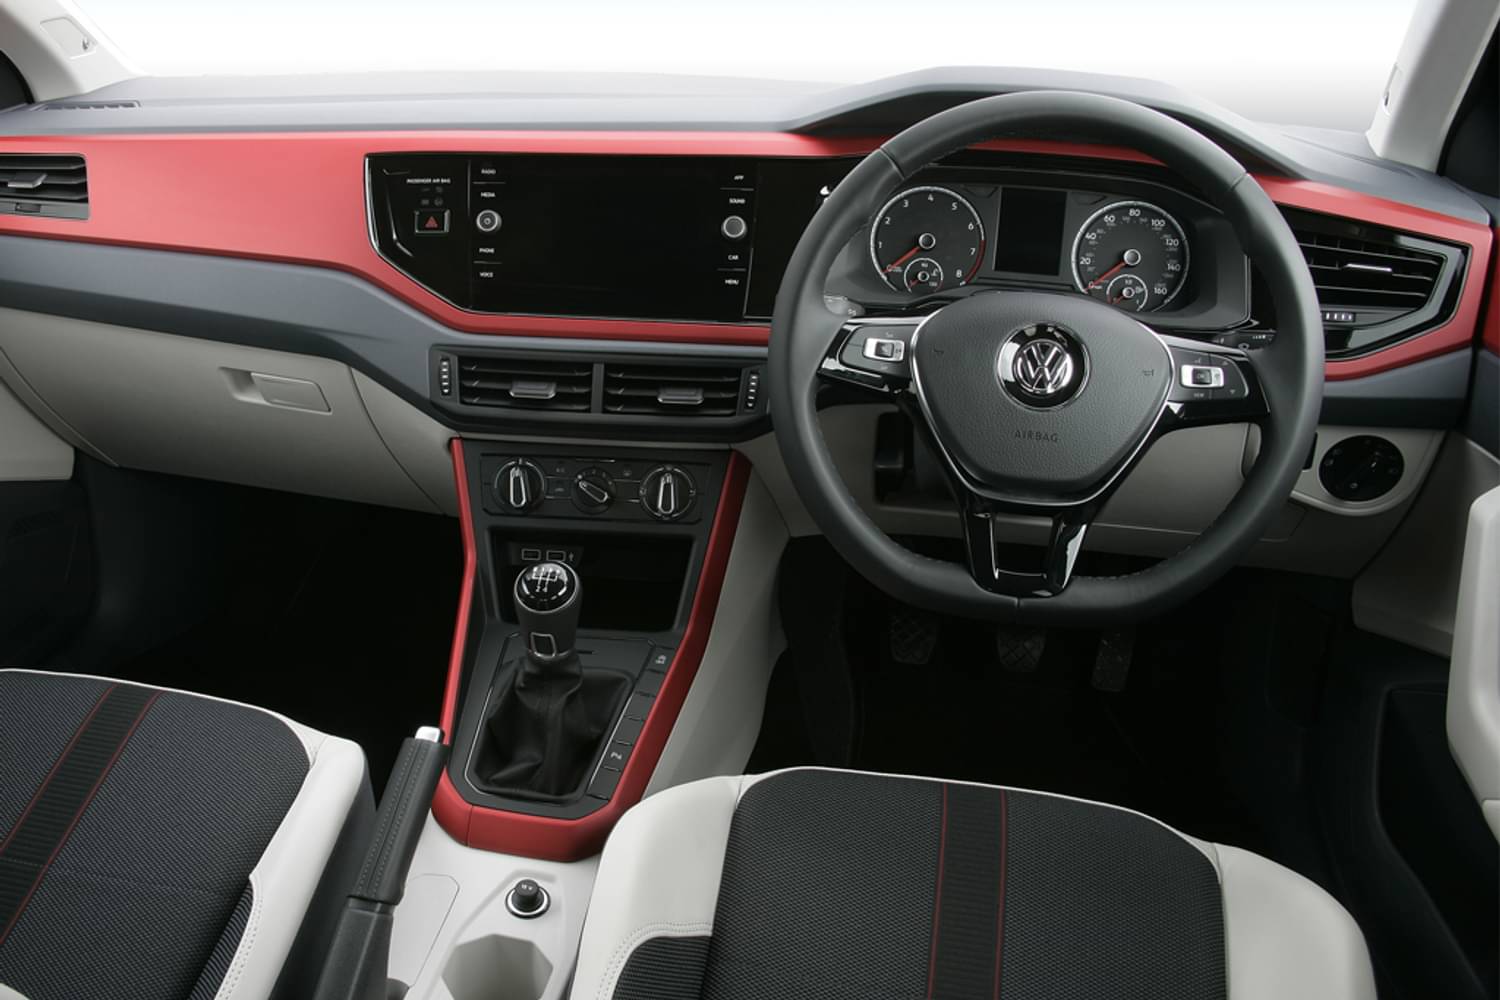 New Volkswagen Polo Hatchback 1 0 Tsi 115 Ps Sel 5 Door Dsg 2018 For Sale